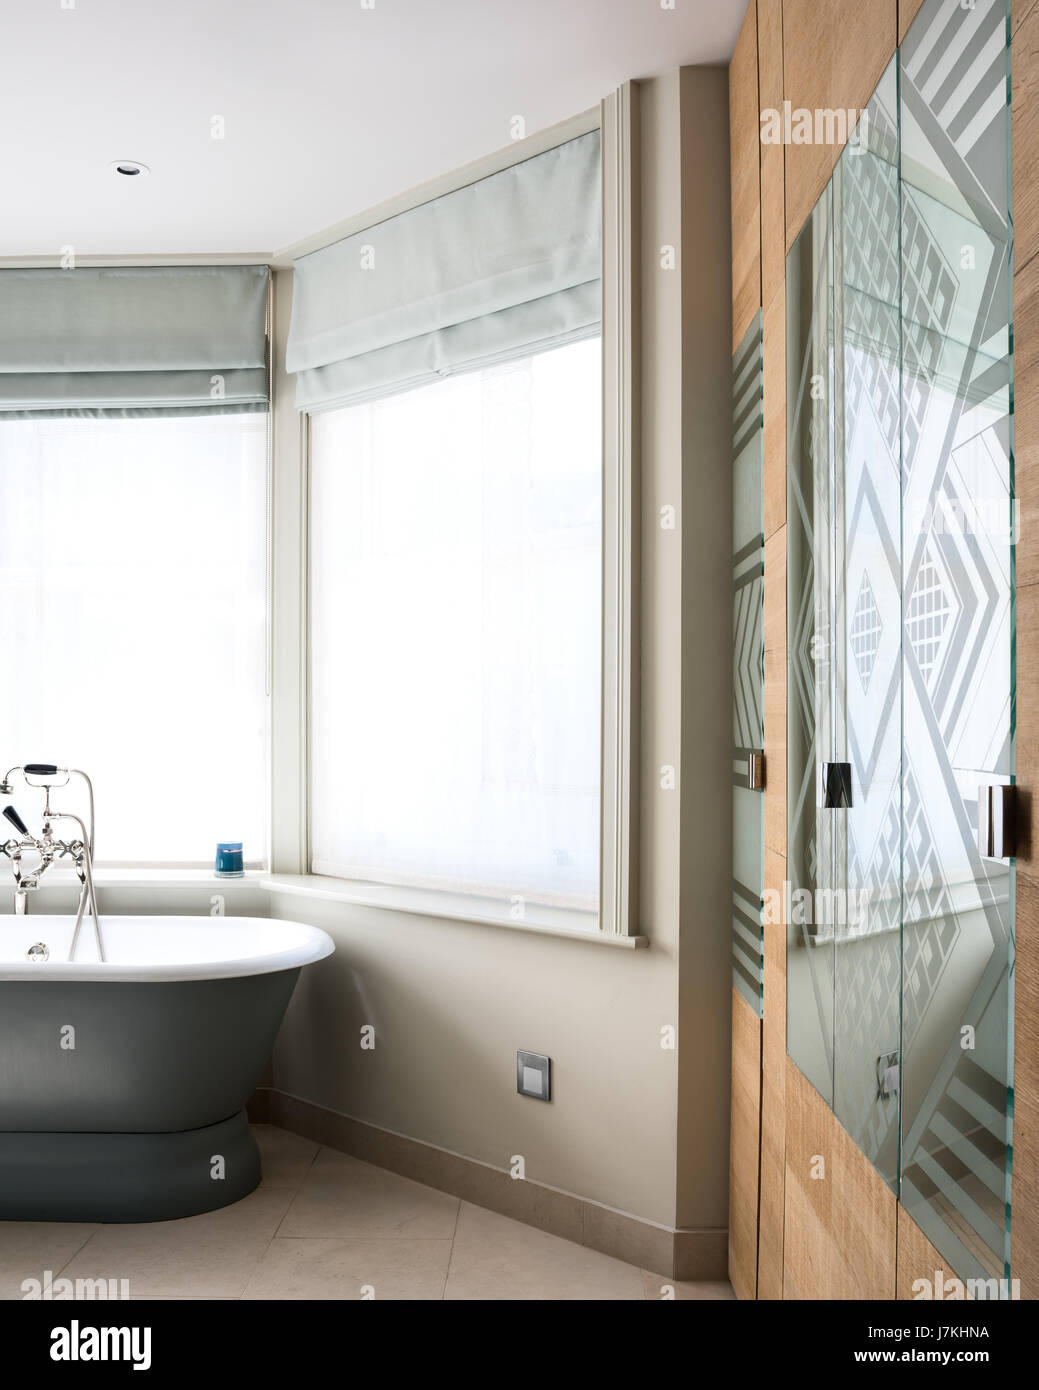 Miroir à motifs de verre dans une salle de bains privative avec baignoire sur pieds et placards intégré Banque D'Images